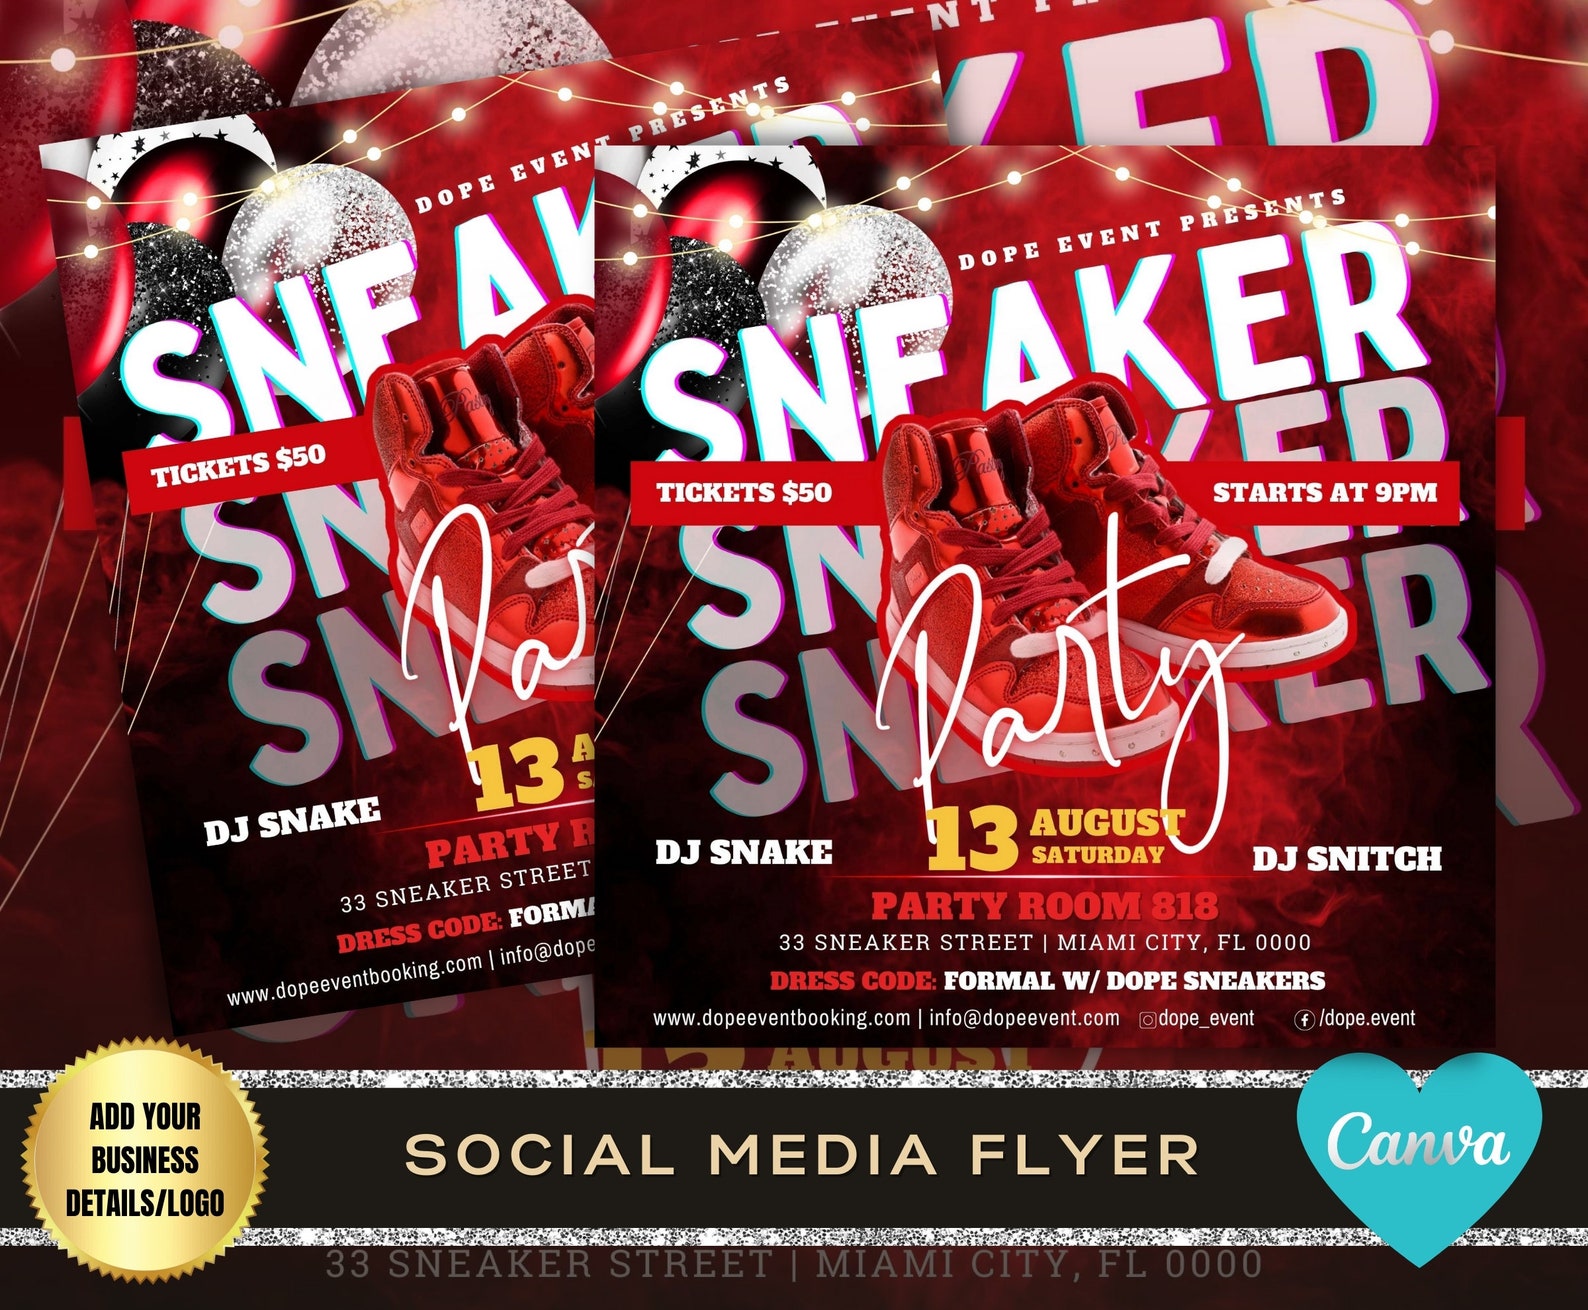 SNEAKER BALL PARTY Flyer Sneaker Gala Soiree Invitation - Etsy